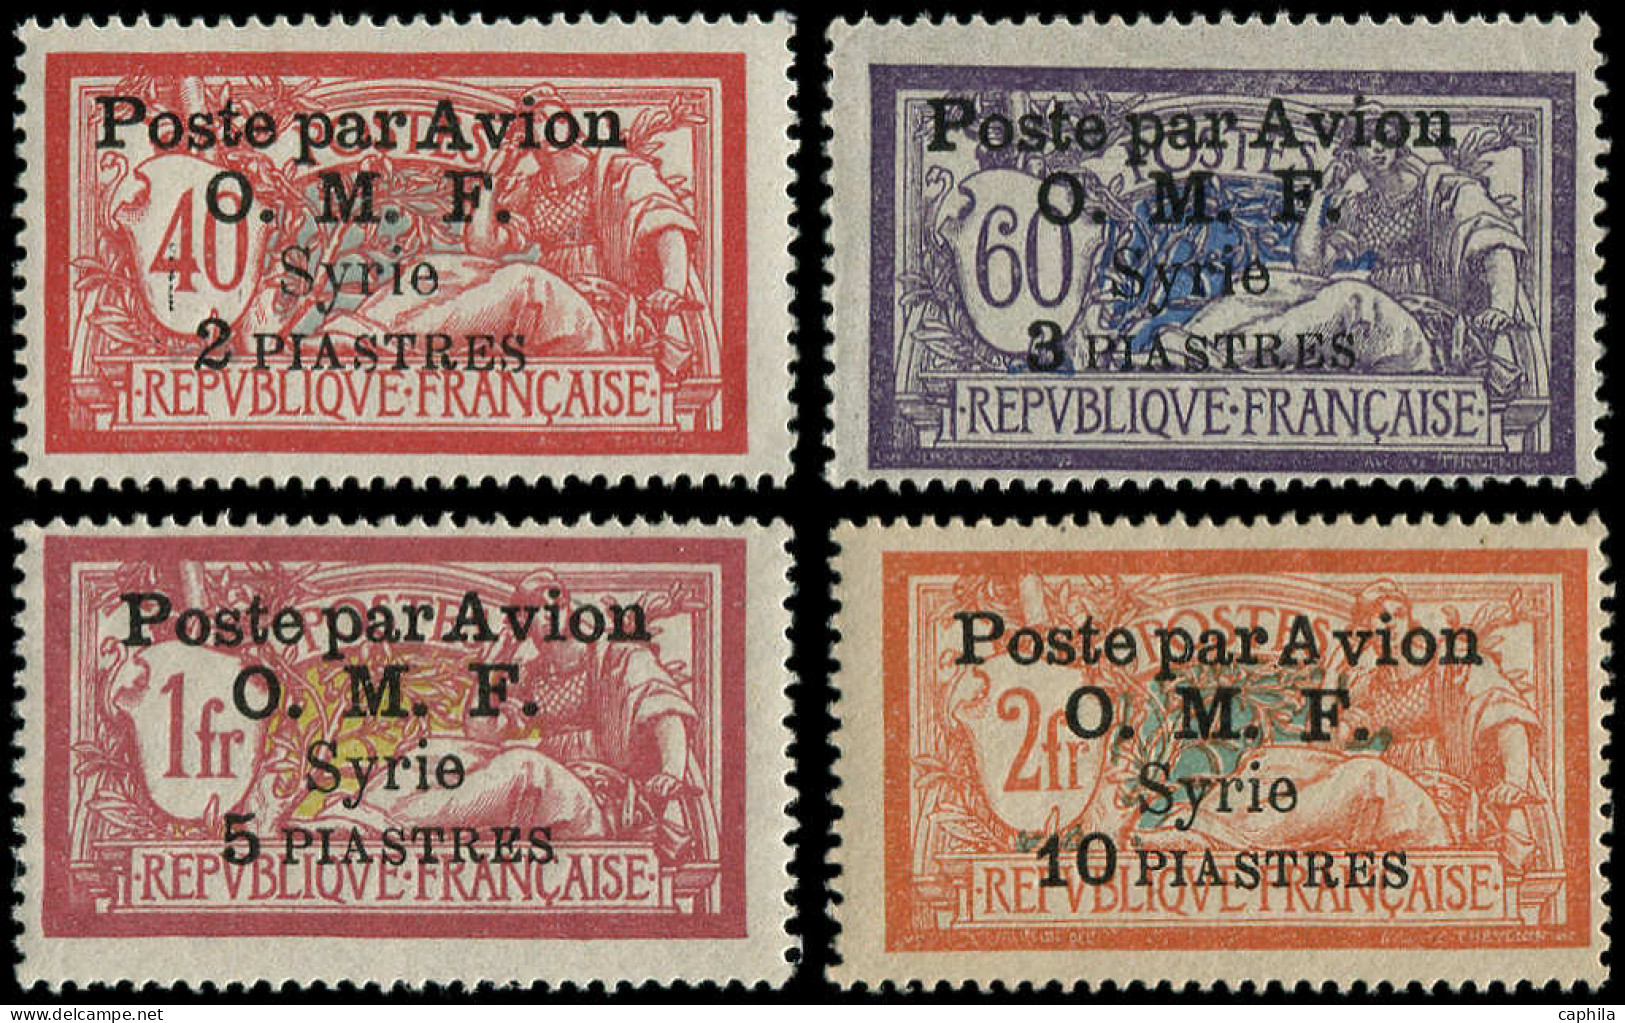 * SYRIE - Poste Aérienne - 10/13, Complet, 4 Valeurs: Merson - Airmail